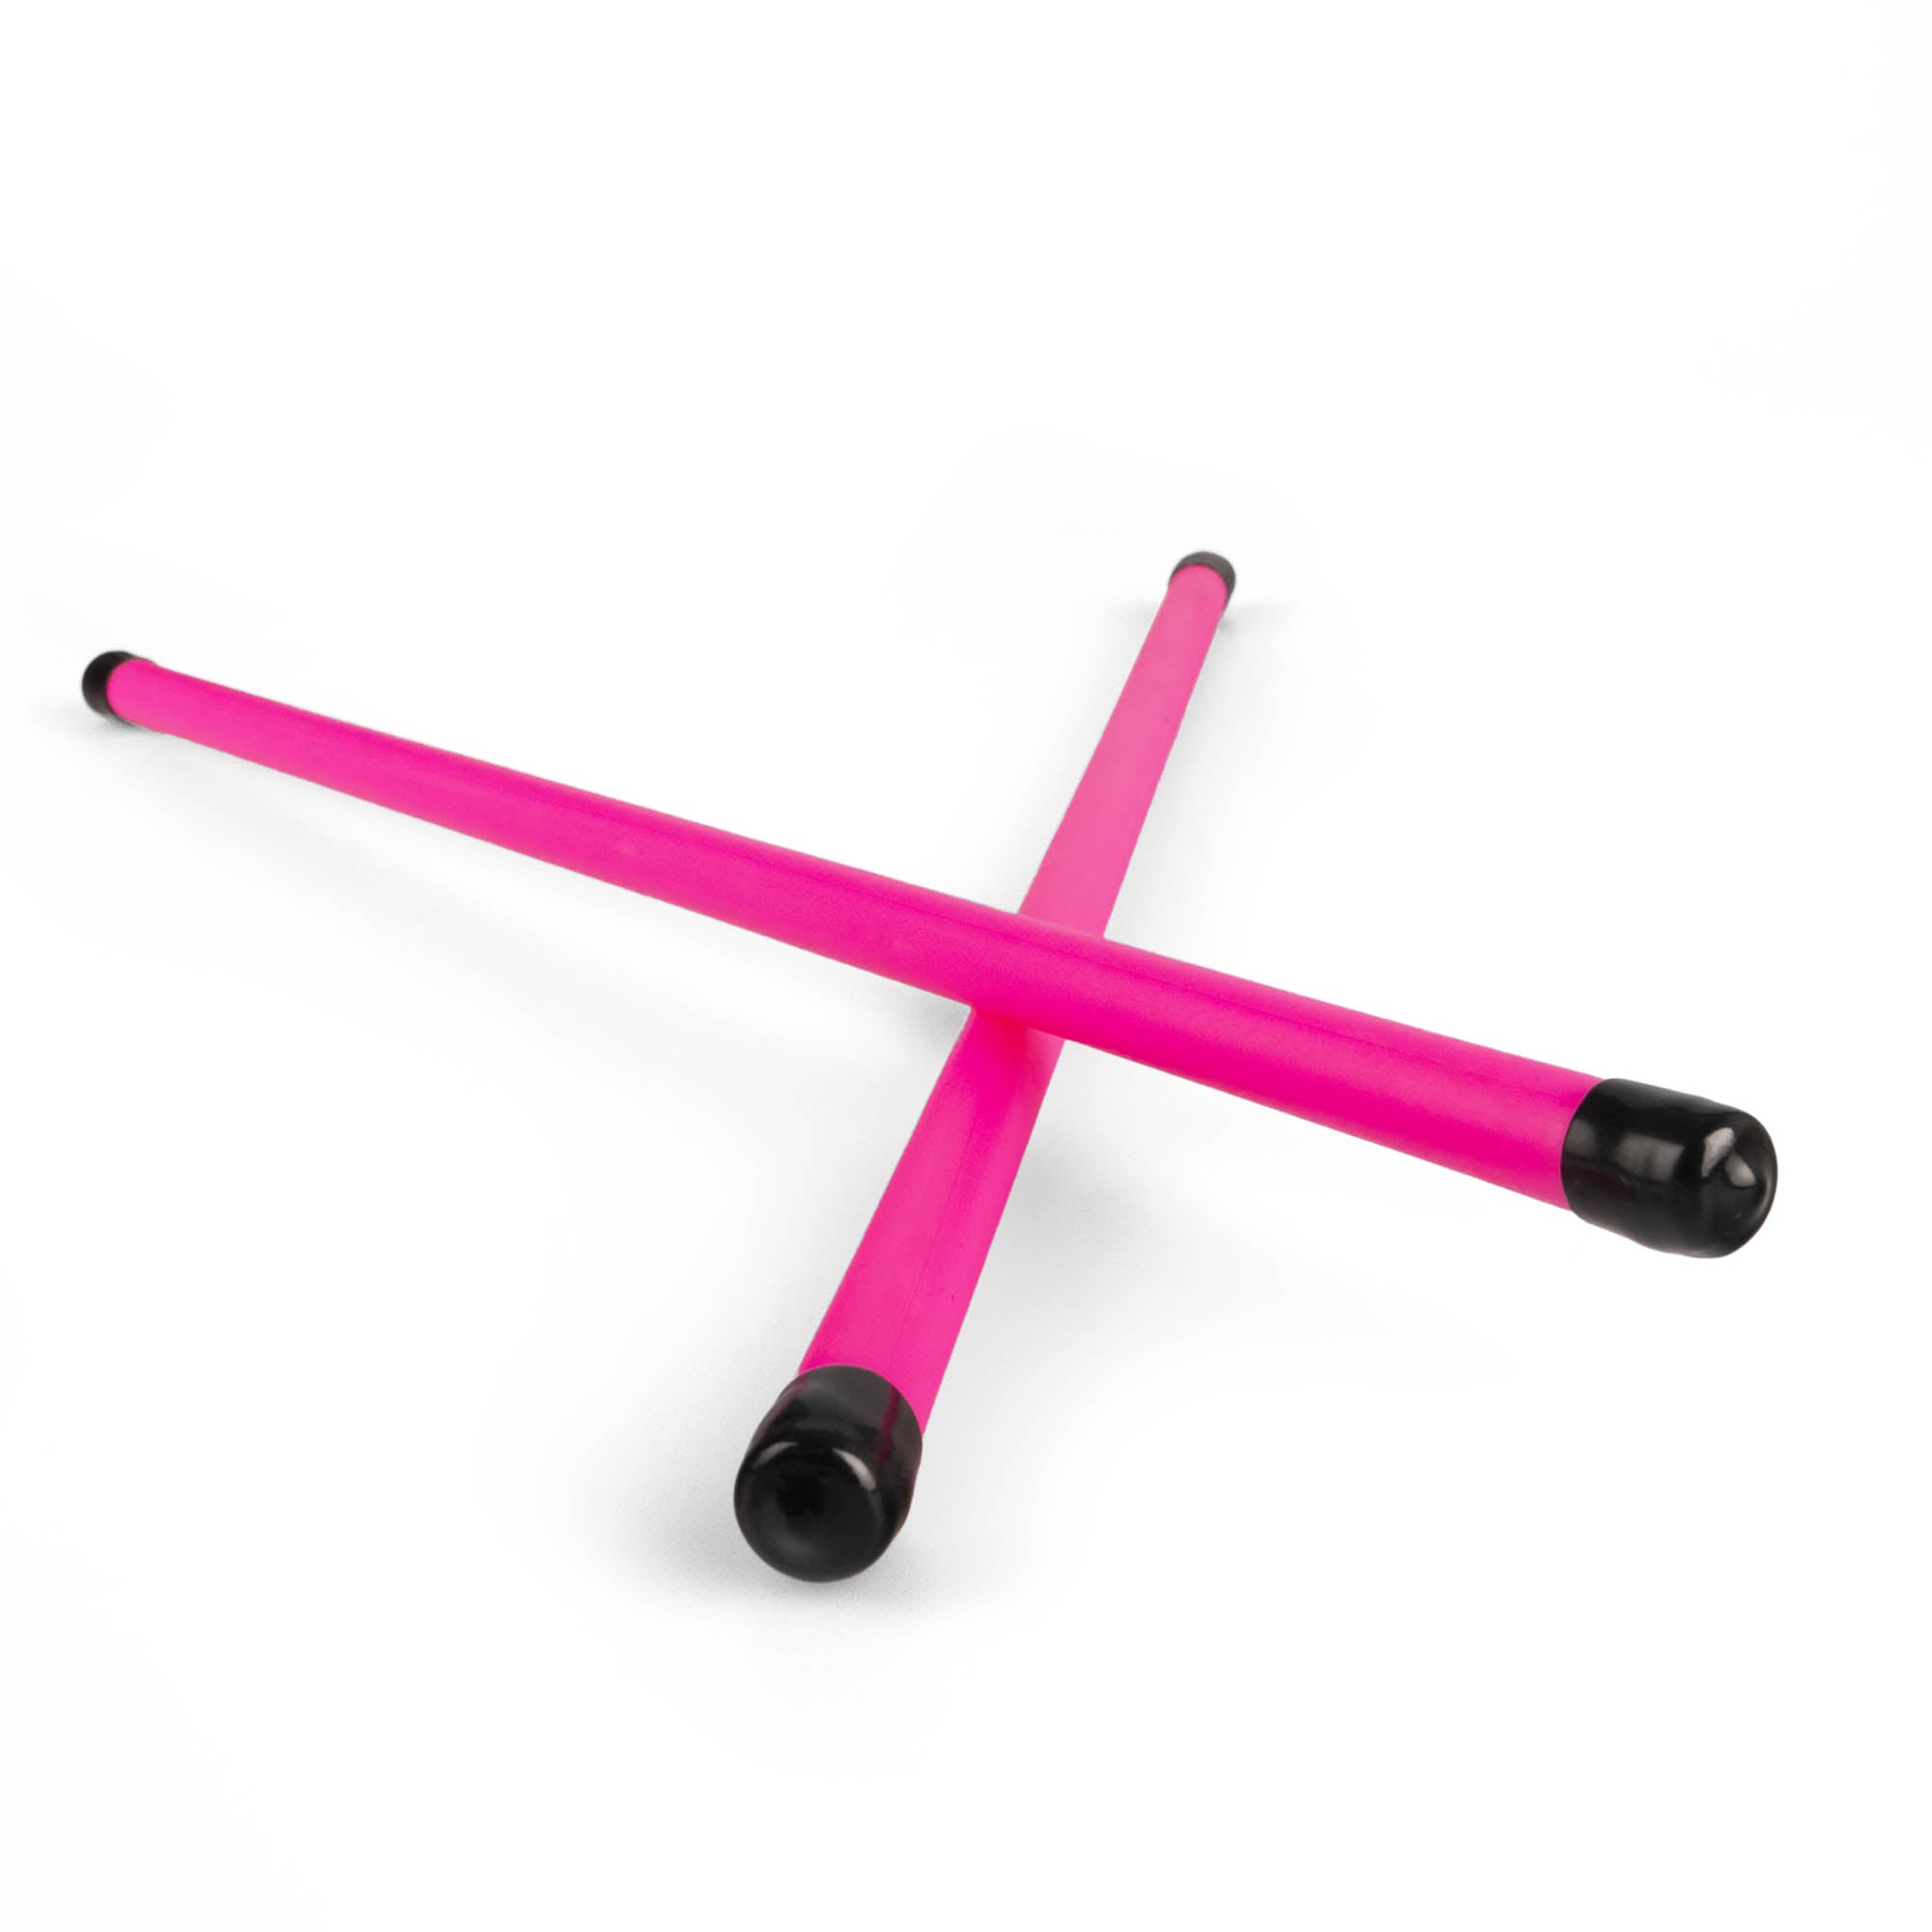 A pair of UV pink devilstick handsticks crossed over